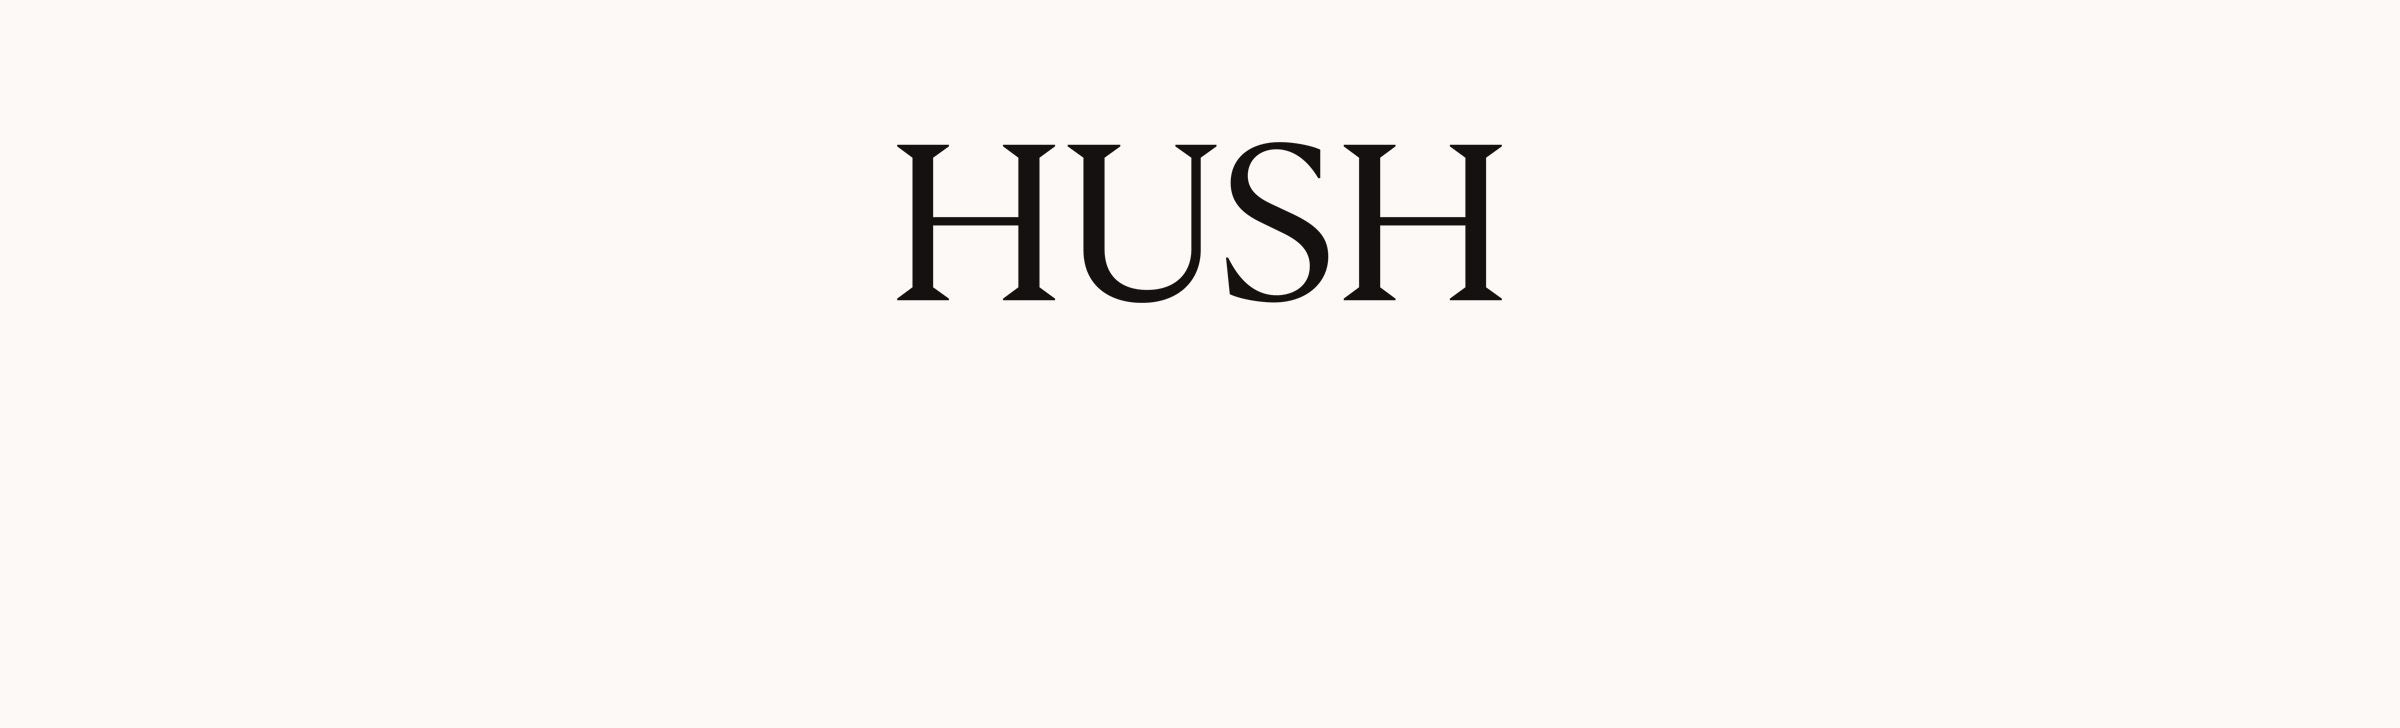 Image of Hush logo on cream background